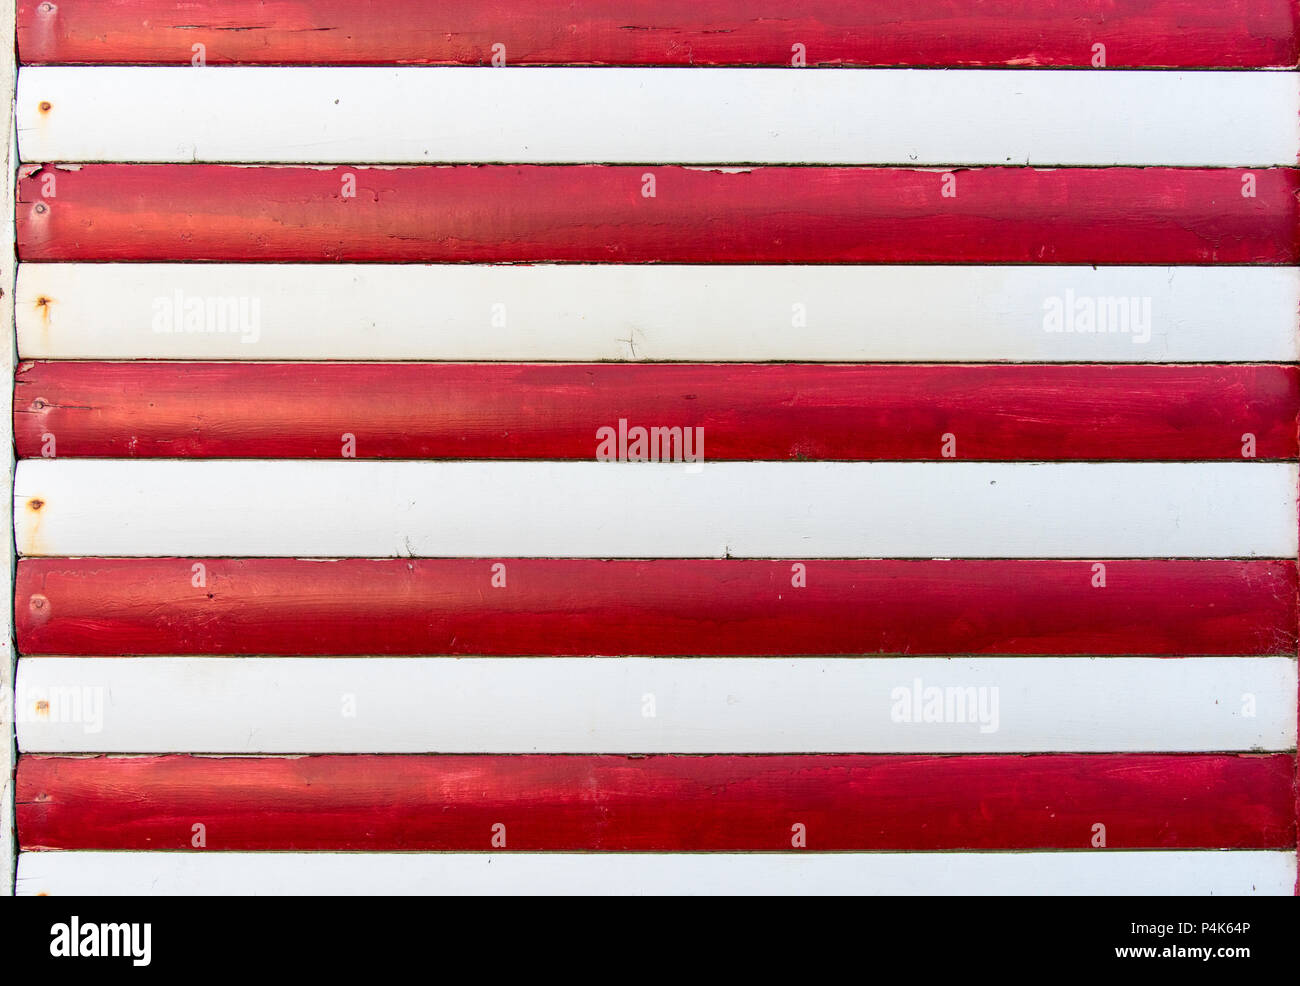 Abschnitt der roten und weißen Holztäfelung aus einem Seaside Beach Hut. Perfekt als Hintergrund für Sommerurlaub oder Meer Themen. Stockfoto